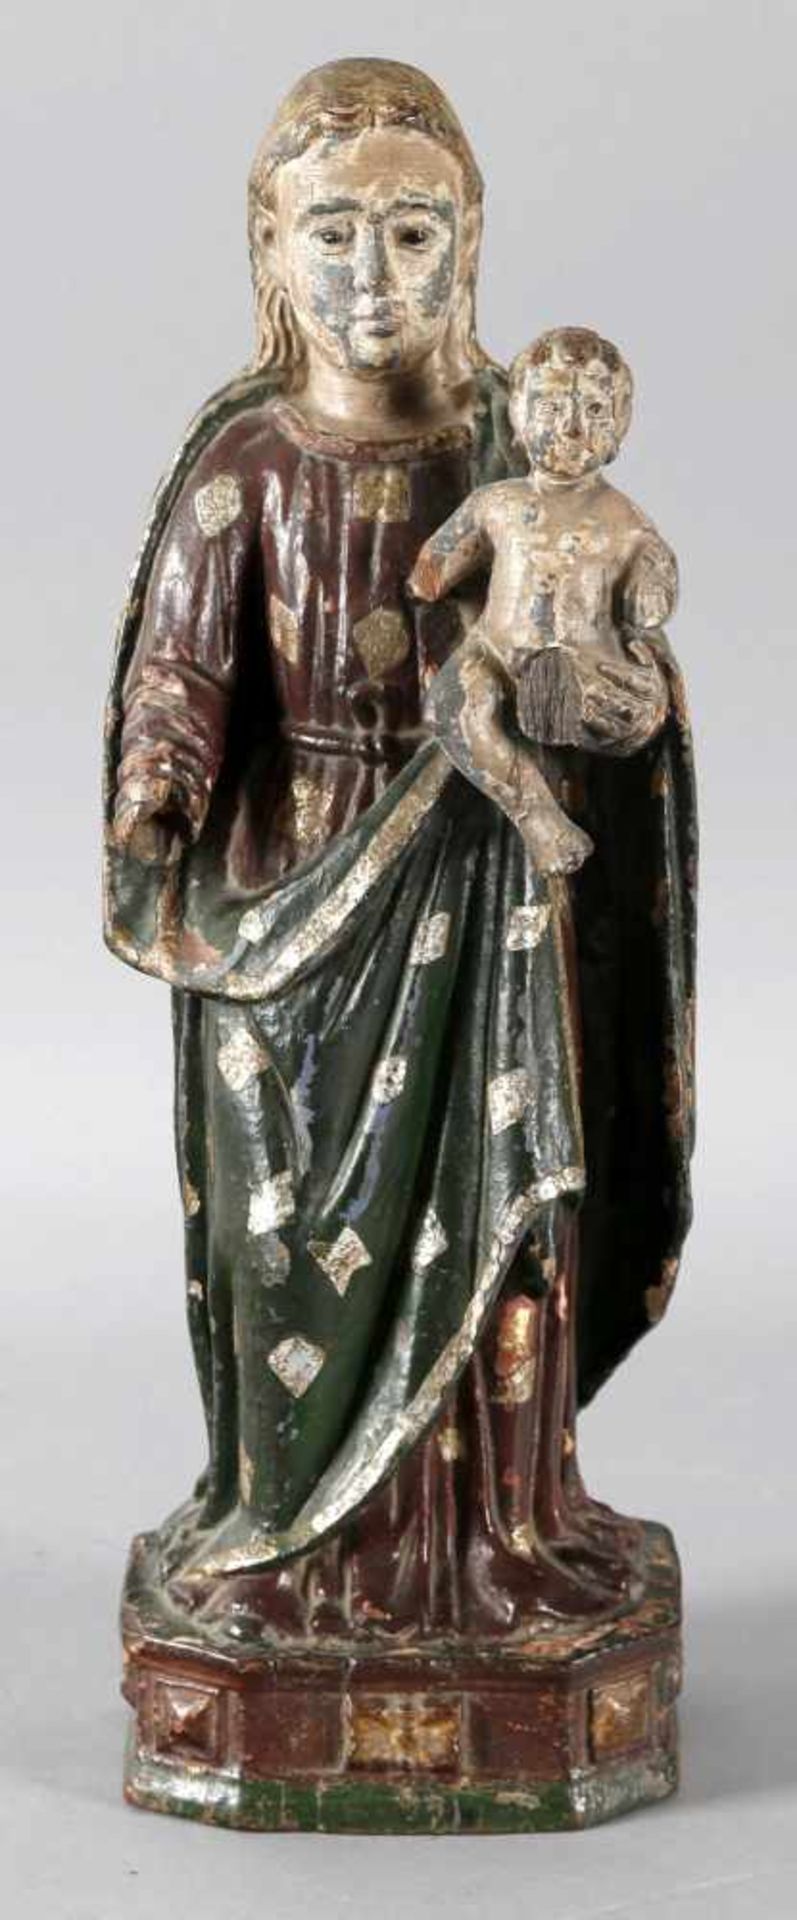 Maria mit Kind, Goa, 19. Jh.Holz geschnitzt, gefasst und vergoldet/versilbert, Skulptur ist mehrfach